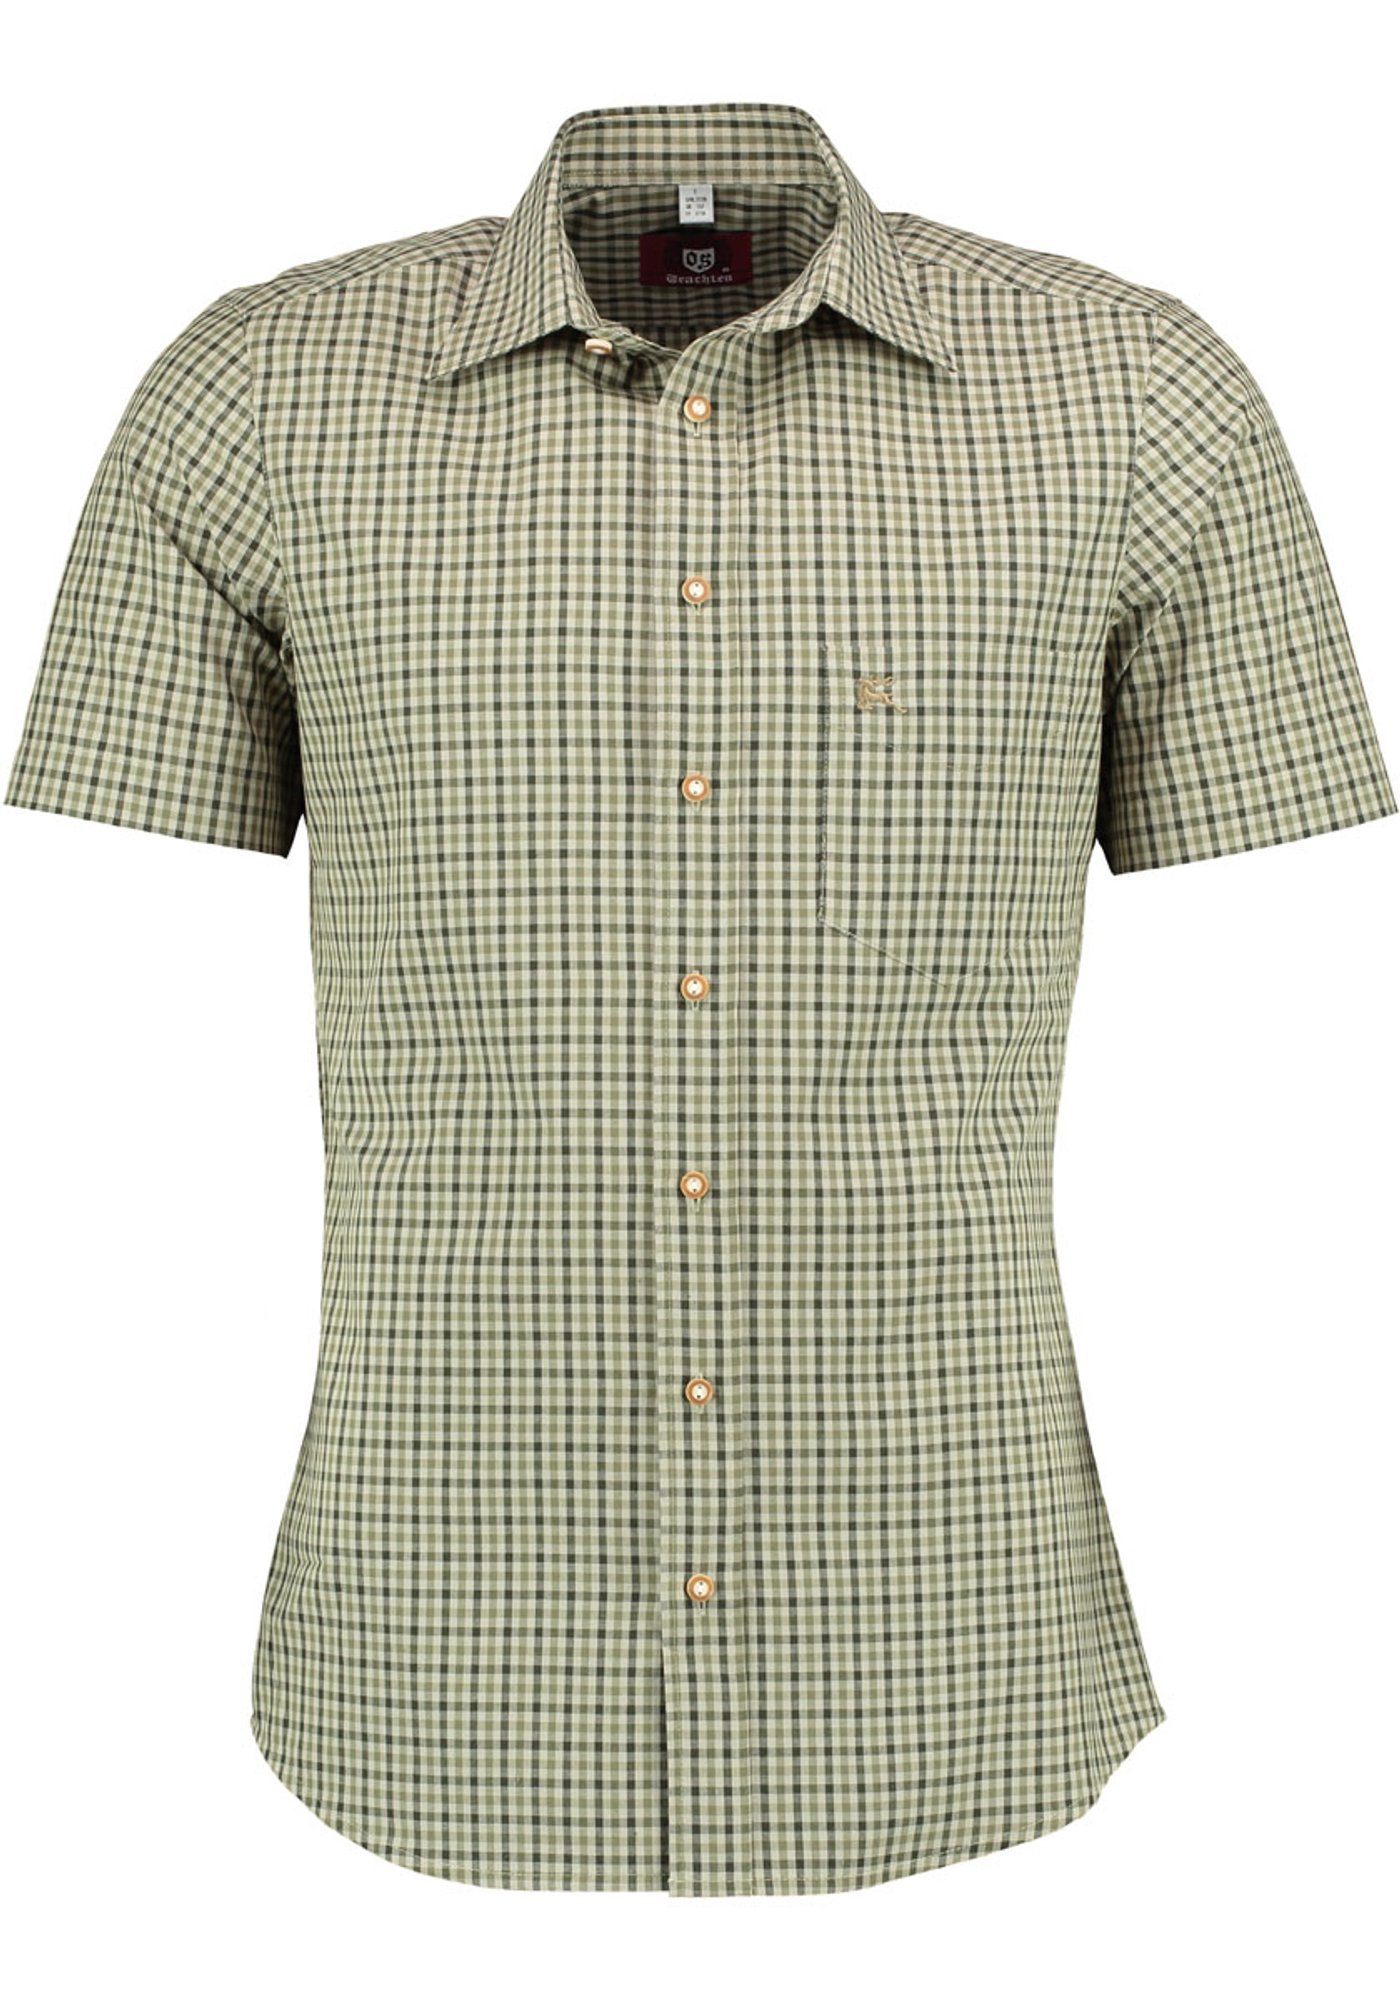 OS-Trachten Trachtenhemd Purli Kurzarmhemd mit Hirsch-Stickerei auf der Brusttasche dunkelgrün